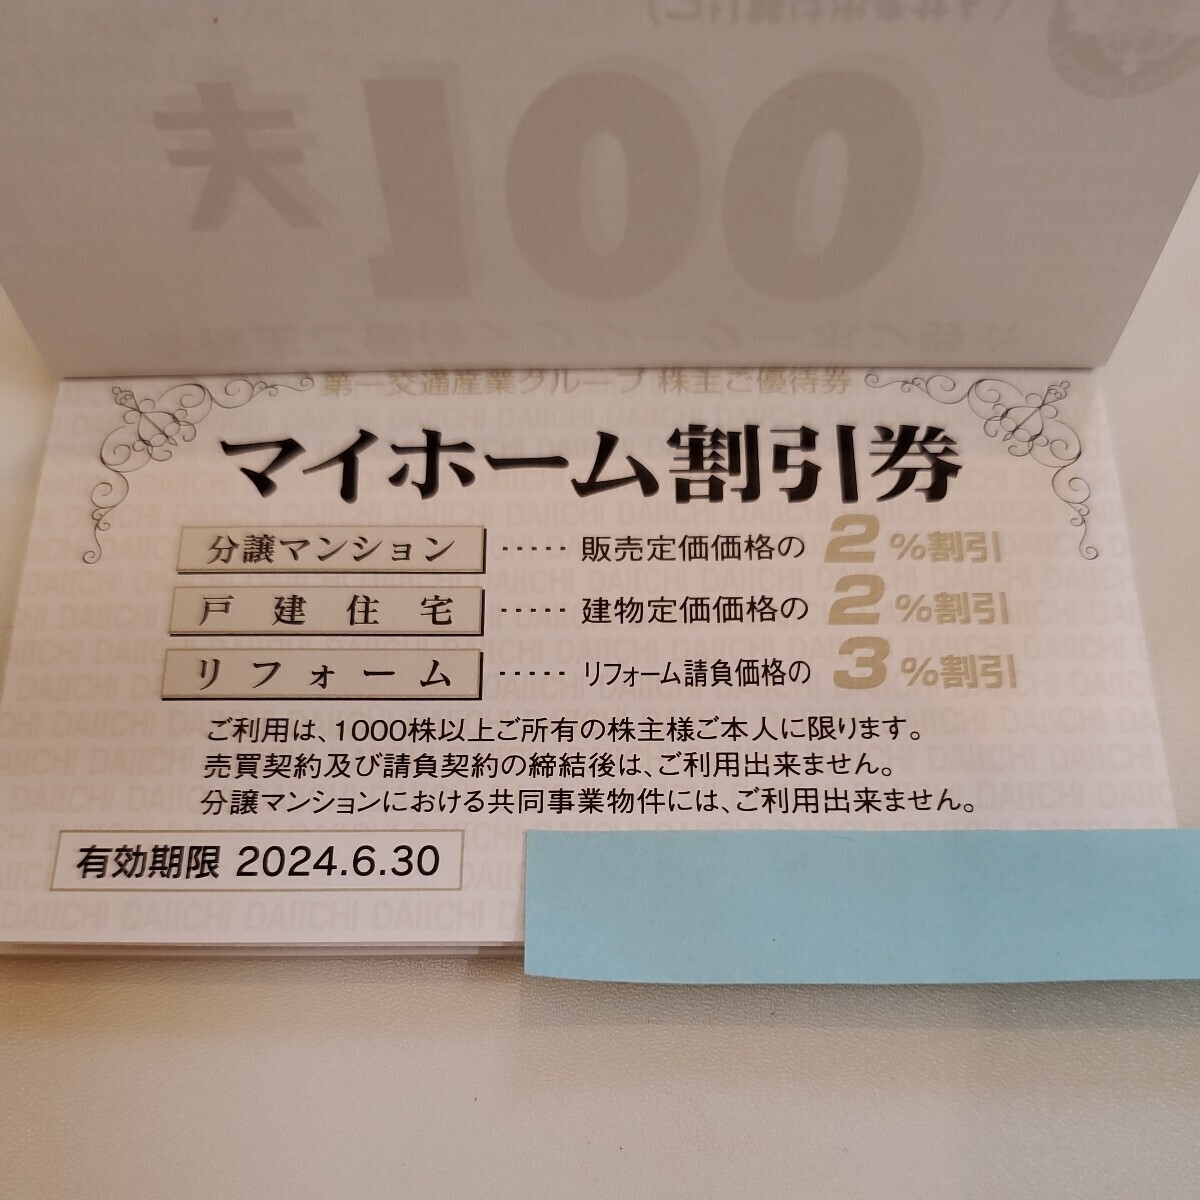  первый  дорожное движение  ...　...　30 шт. 　... купон  ...30,000  йен ...　 ( использование   срок 2024 год  июнь 30 день до )【 доставка бесплатно 　... название  *   отслеживание   возможный  почтовый пакет  】